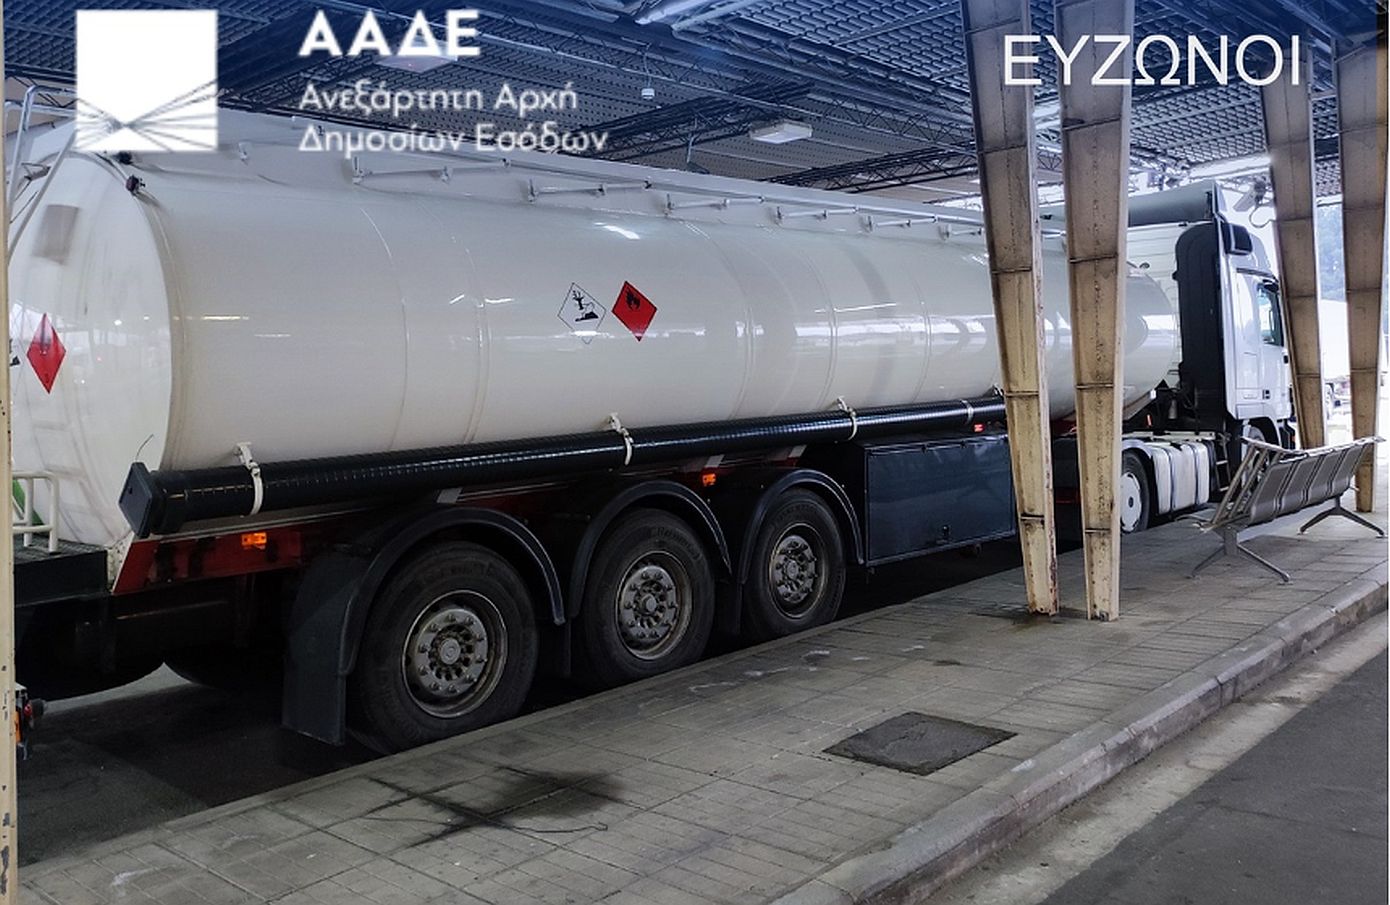 Μπλόκο της ΑΑΔΕ σε φορτία με 23.000 κιλά διαλύτη για νόθευση καυσίμων σε Πάτρα και Ευζώνους